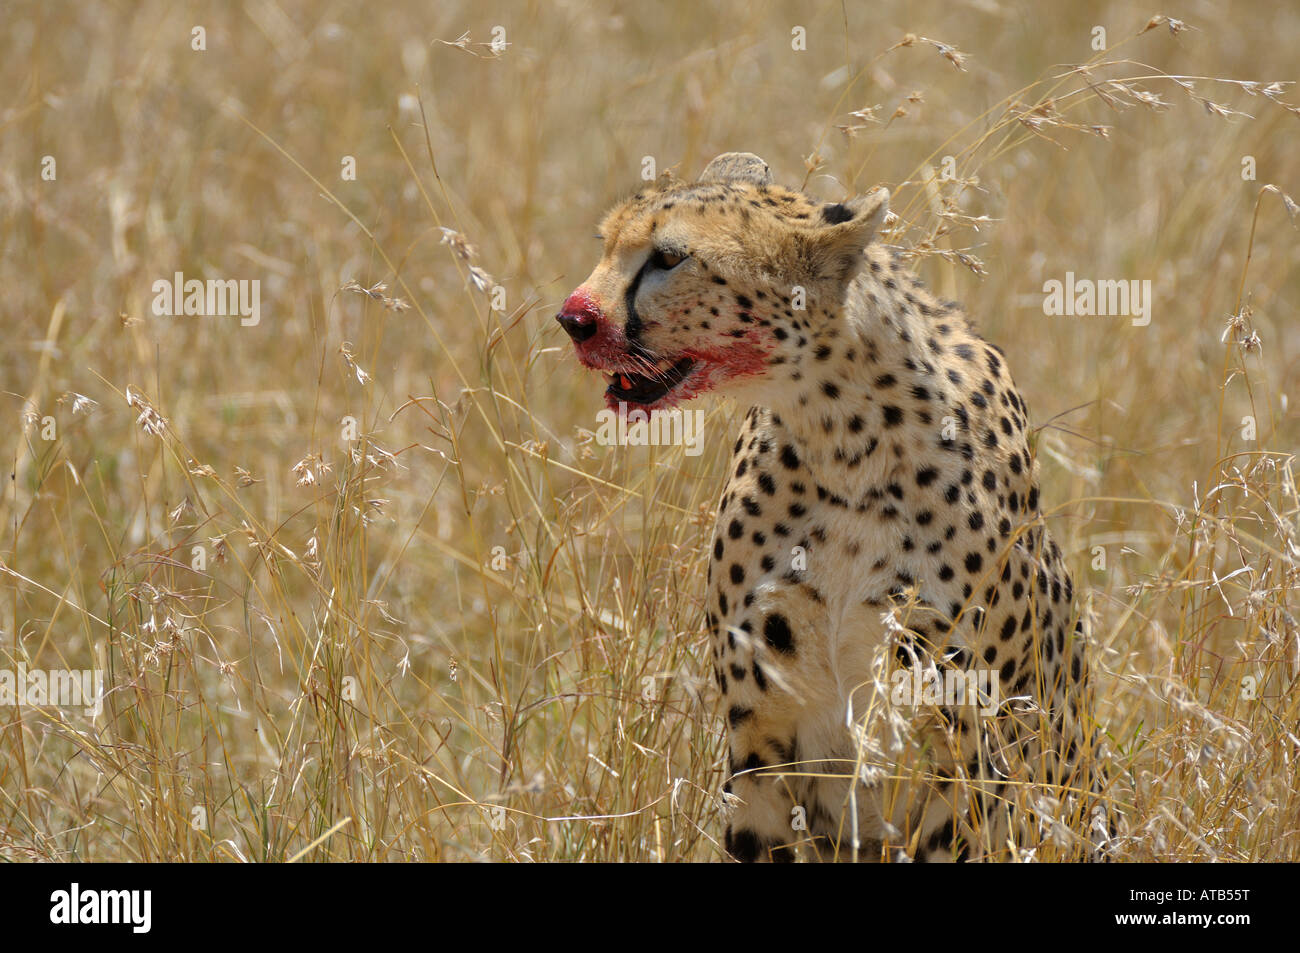 Cheetahs,a Cheetah at a gazelle kill, with blood on his mouth, Masai Mara,Kenya Stock Photo